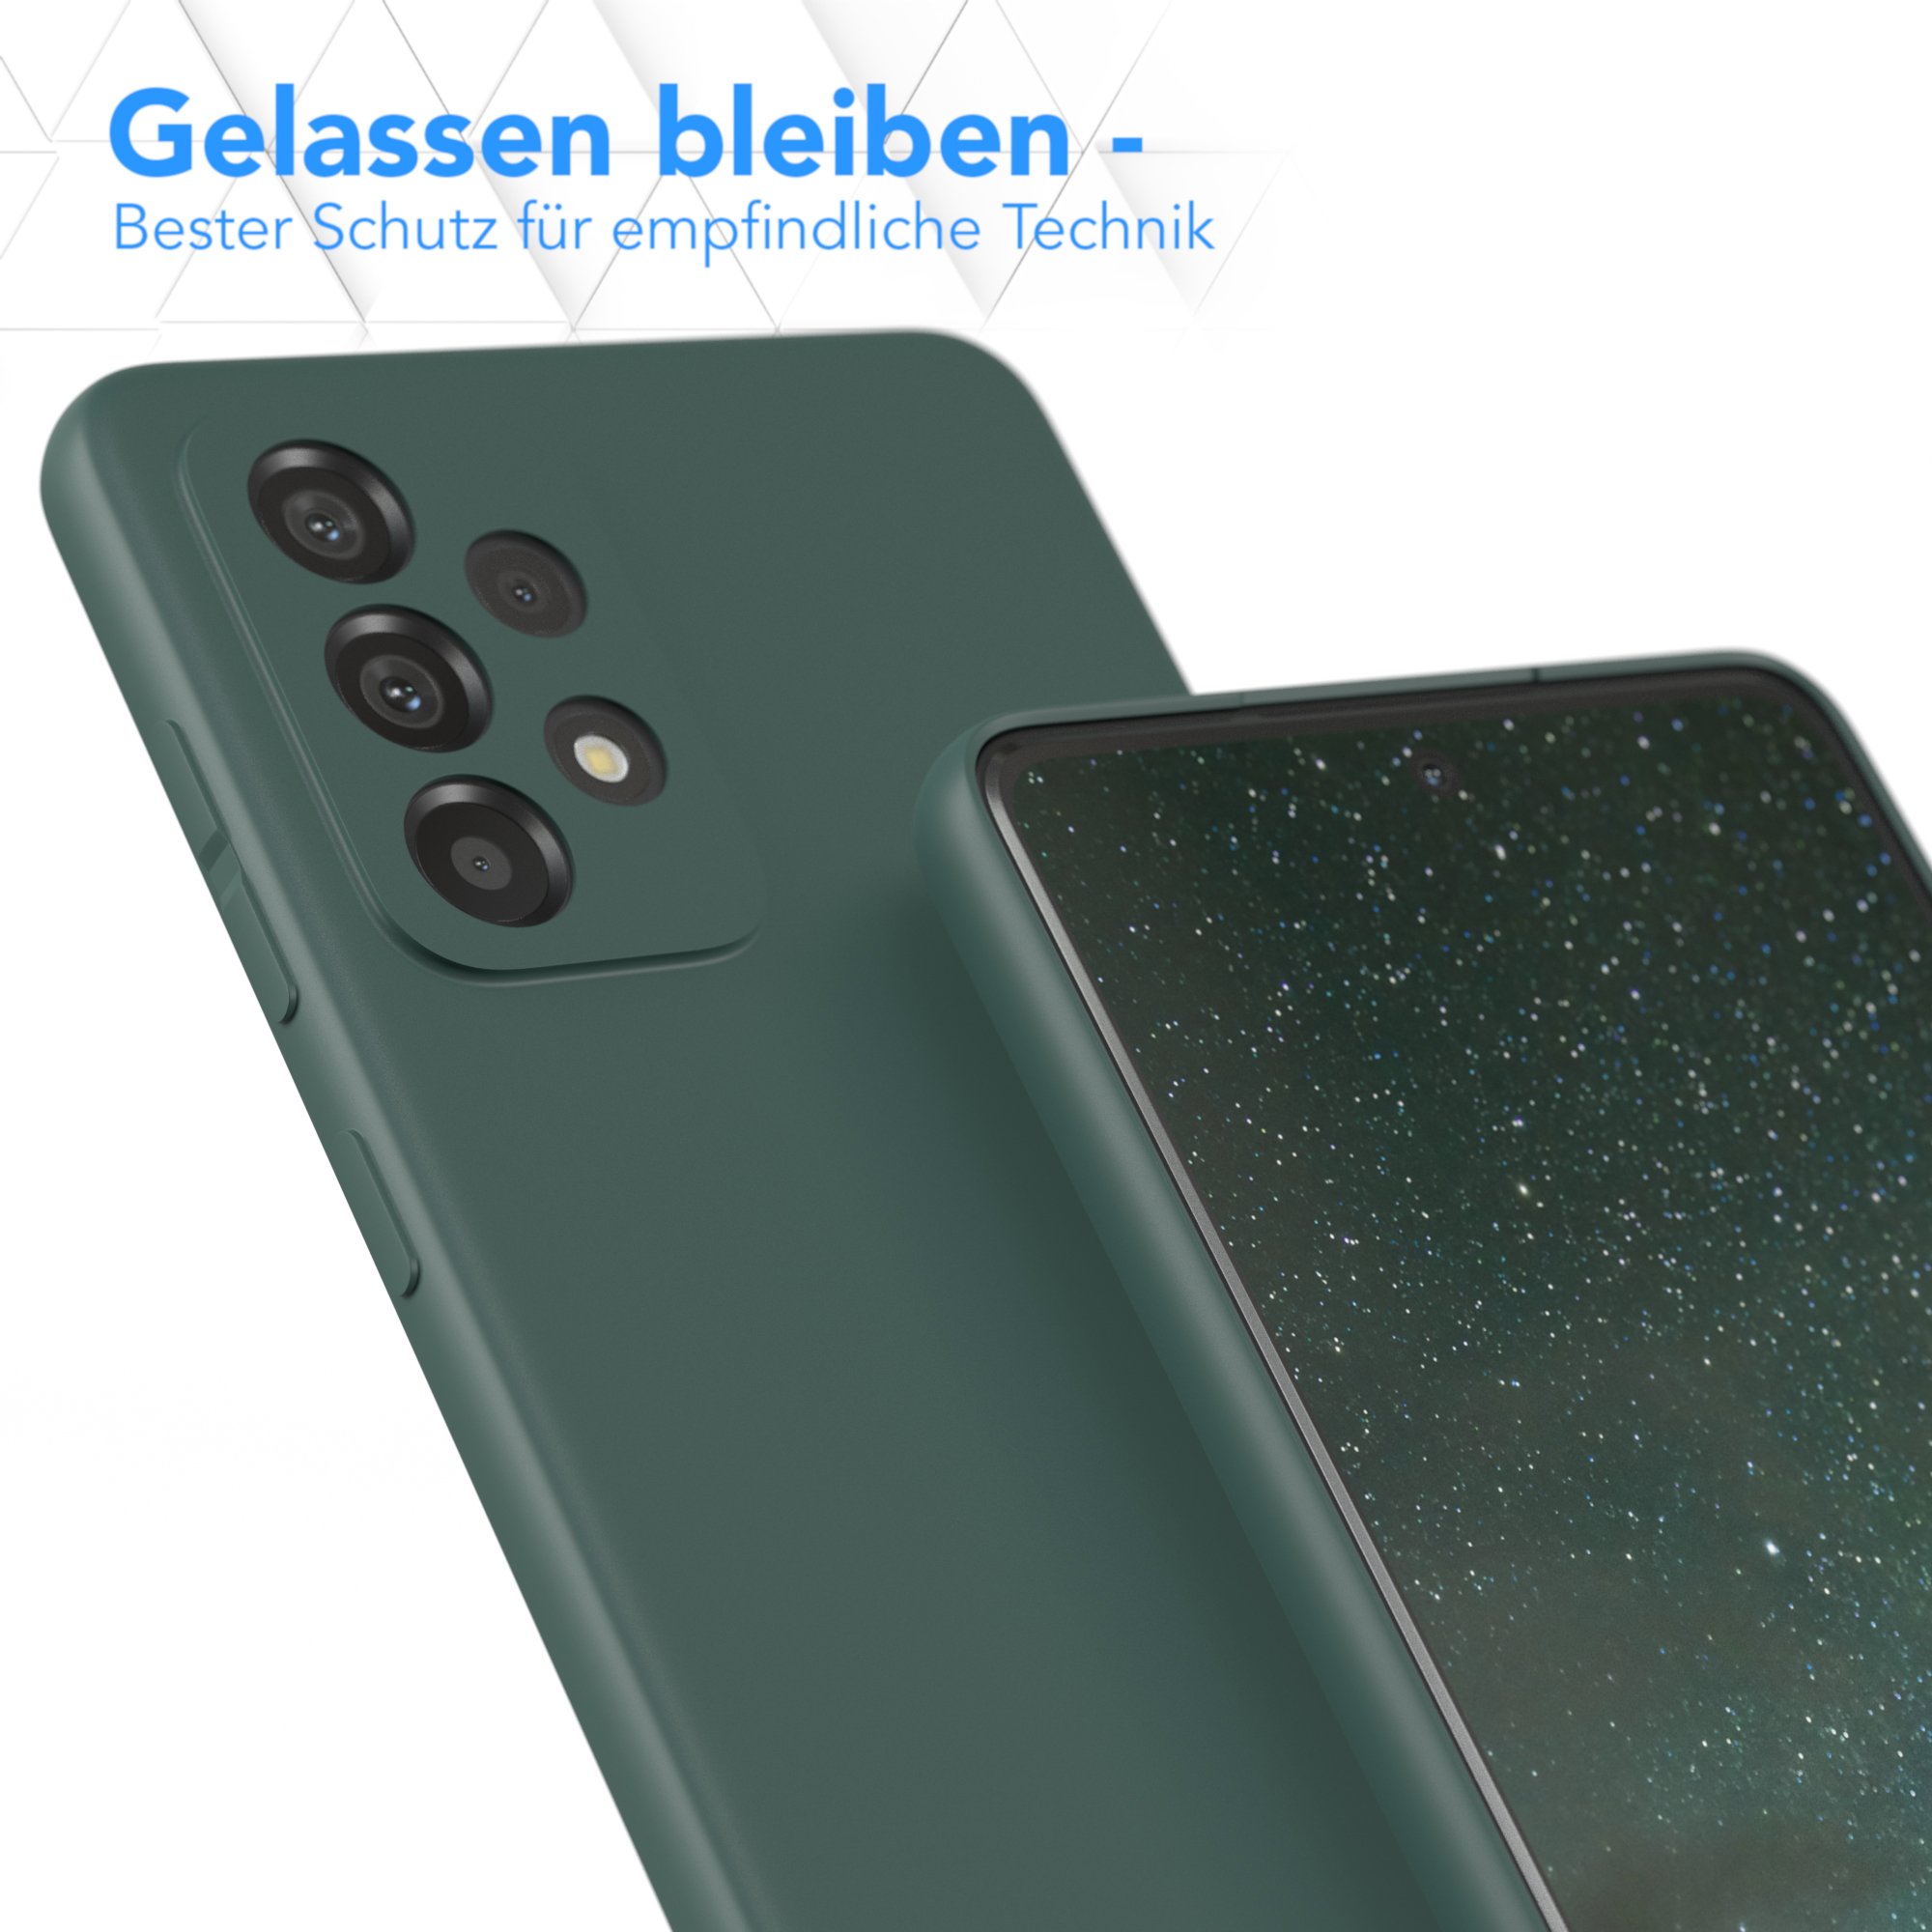 Nachtgrün / EAZY Backcover, Galaxy Samsung, Matt, Silikon Grün 5G, A73 Handycase TPU CASE